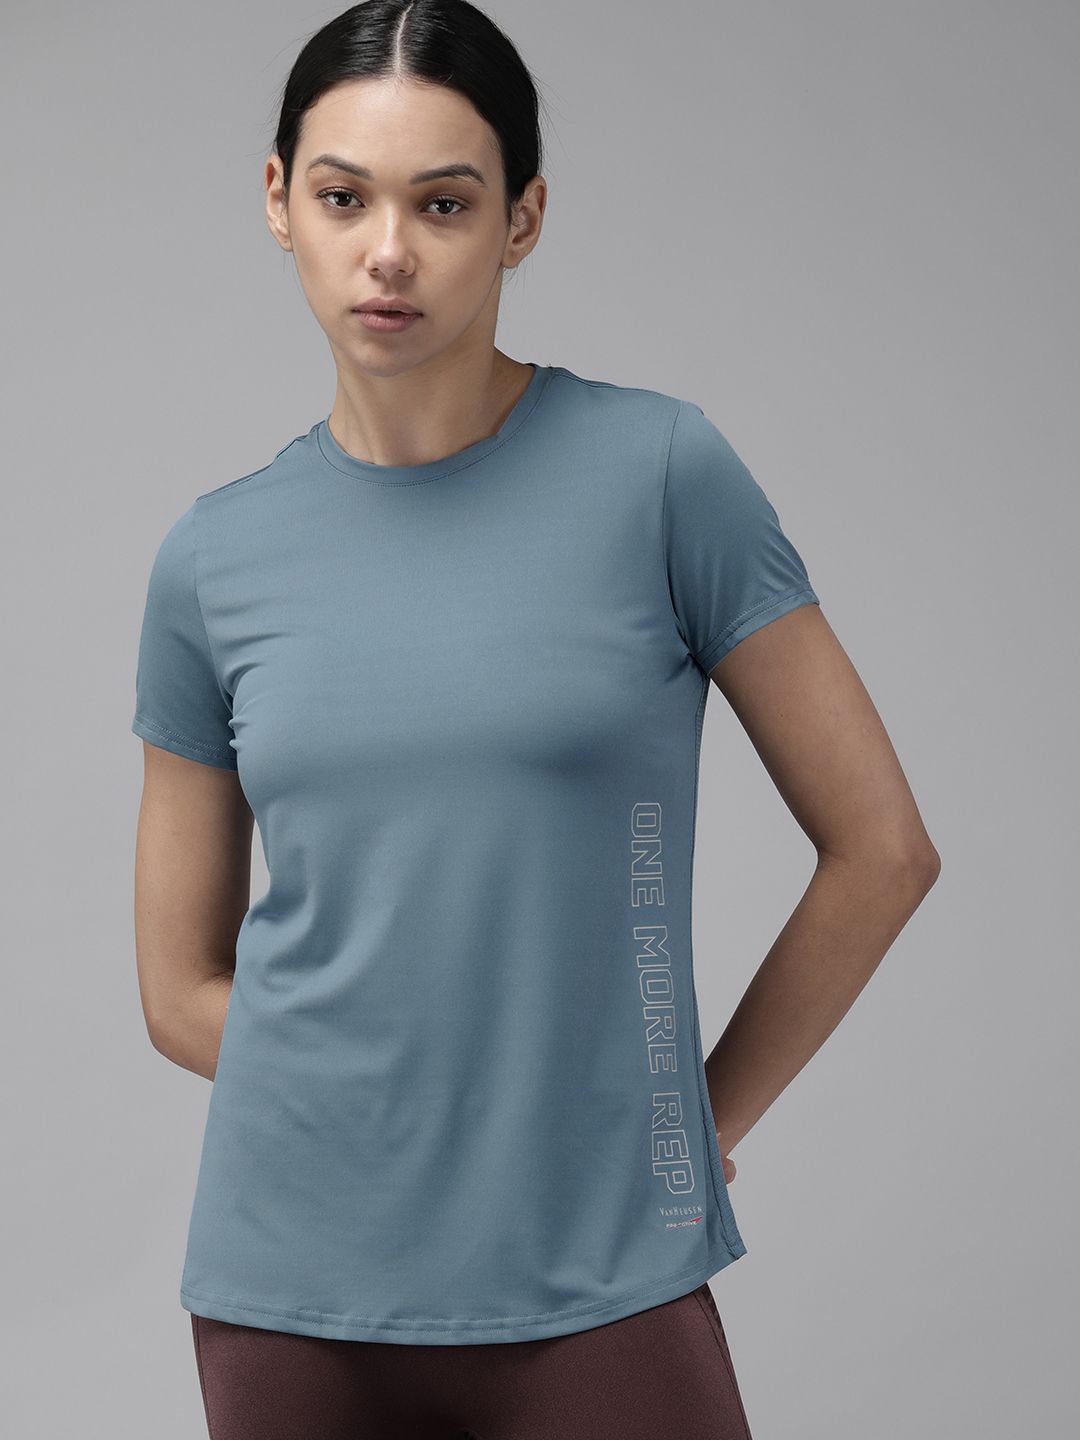 Van Heusen Women Blue Solid ANTIBACTERIAL Lounge T-shirt Price in India